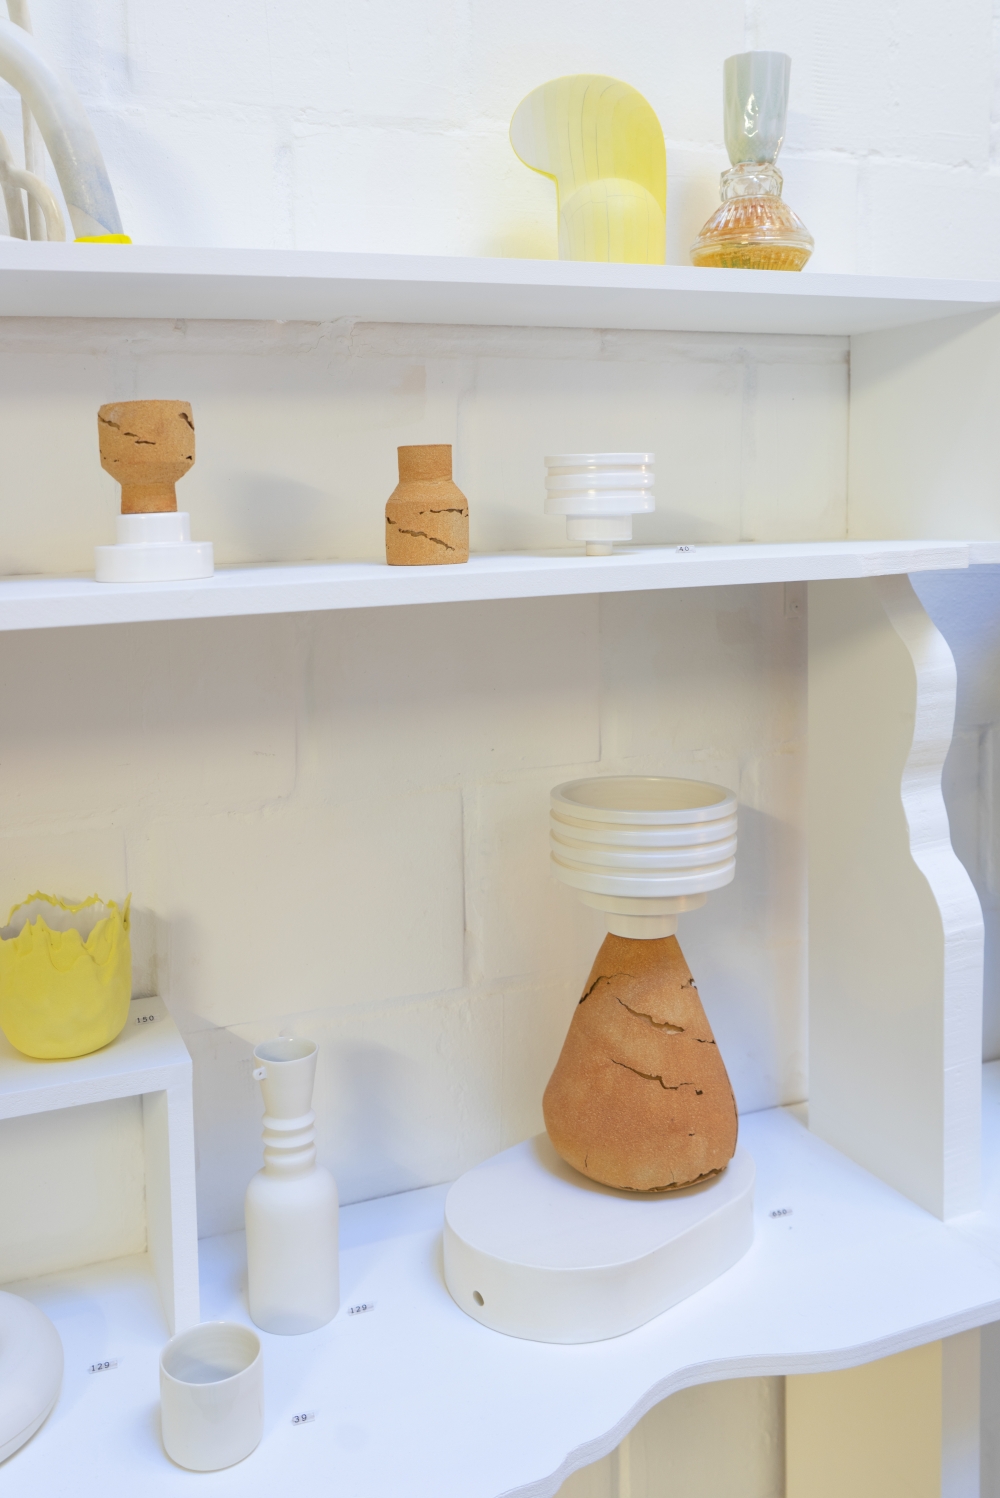 JOELIX.com | Fracas gallery in Brussels #fracas #ceramics #brussels